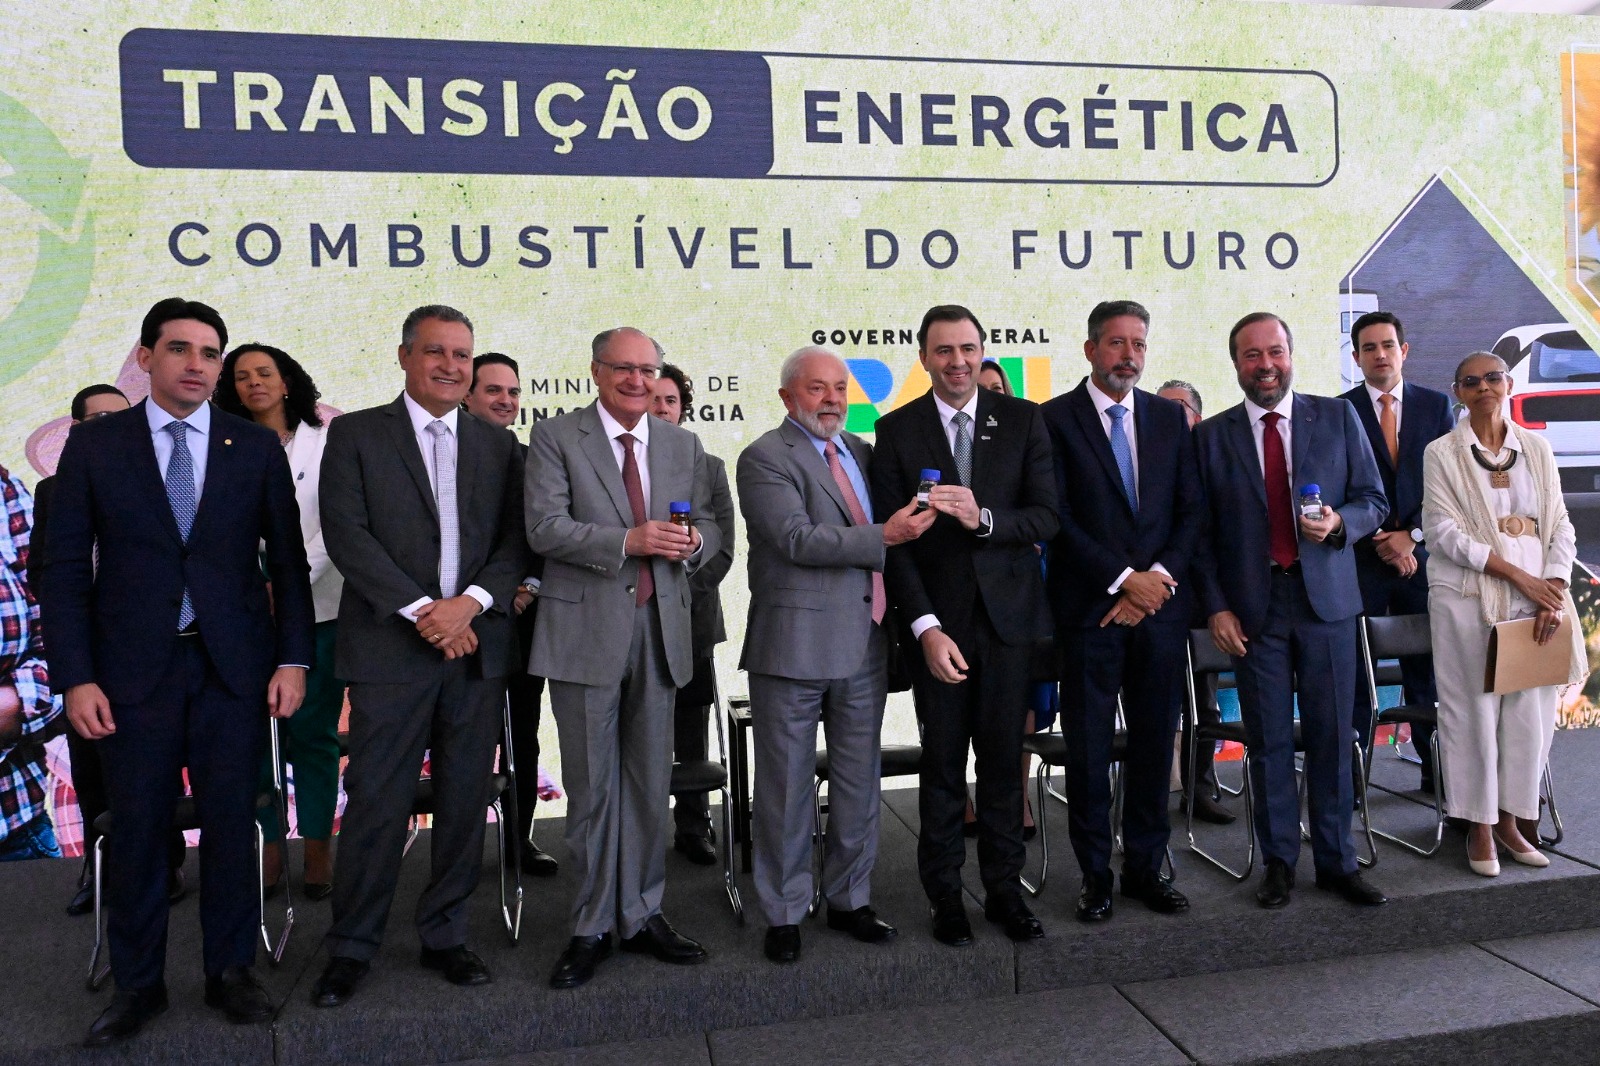 APROBIO destaca Combustível do Futuro e celebra compromisso do Presidente Lula com o aumento do teor de mistura de biodiesel no CNPE